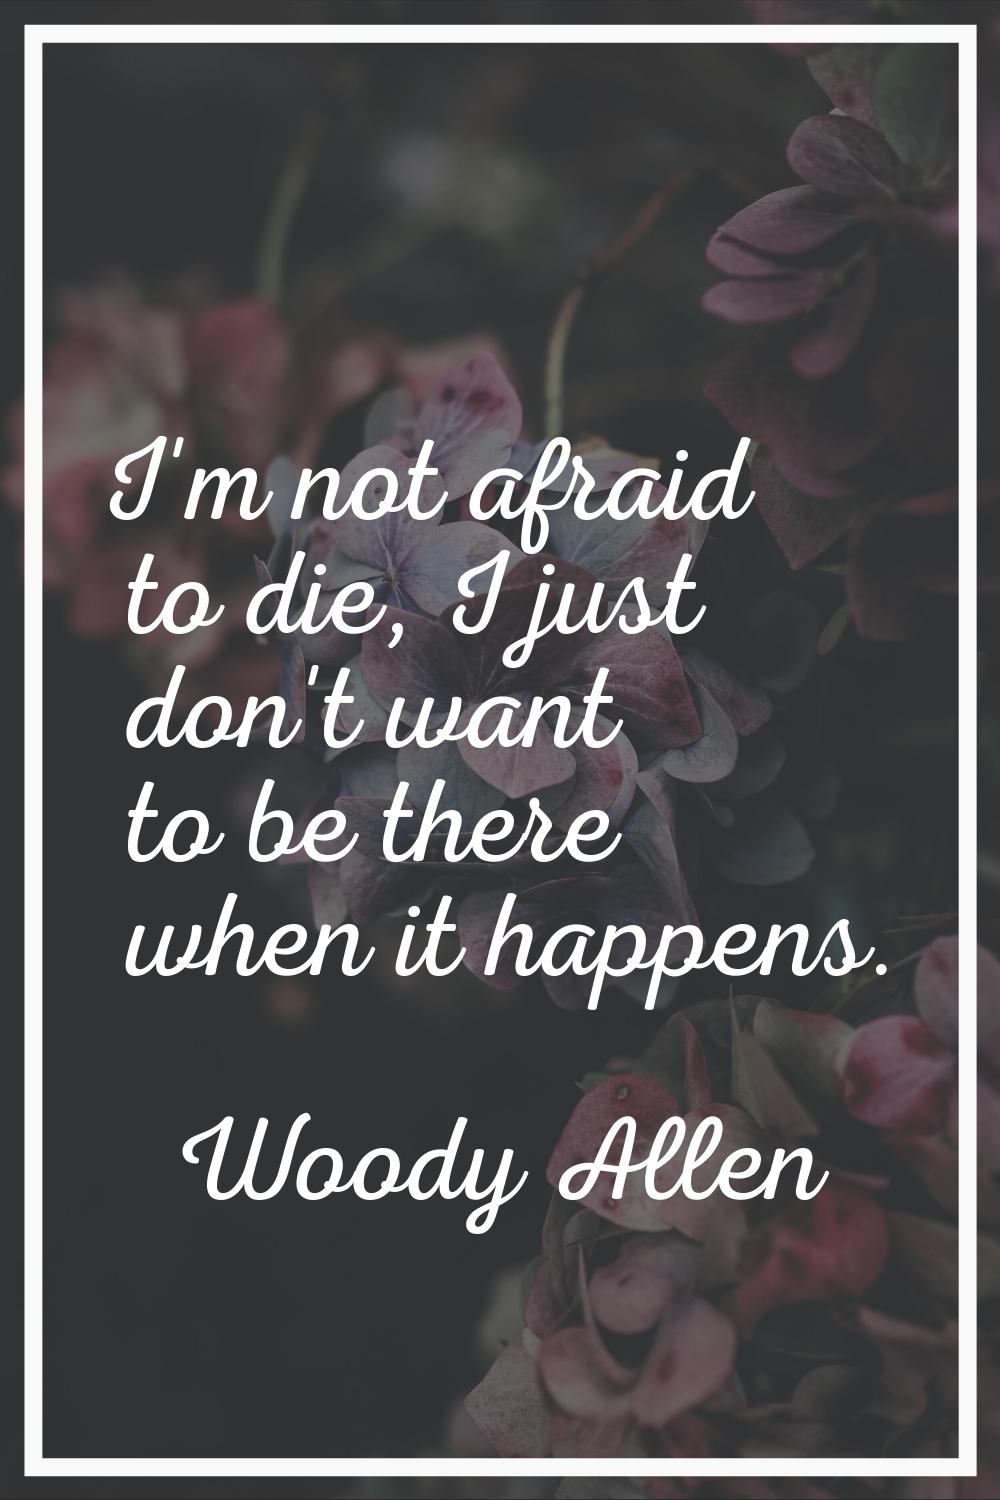 I'm not afraid to die, I just don't want to be there when it happens.